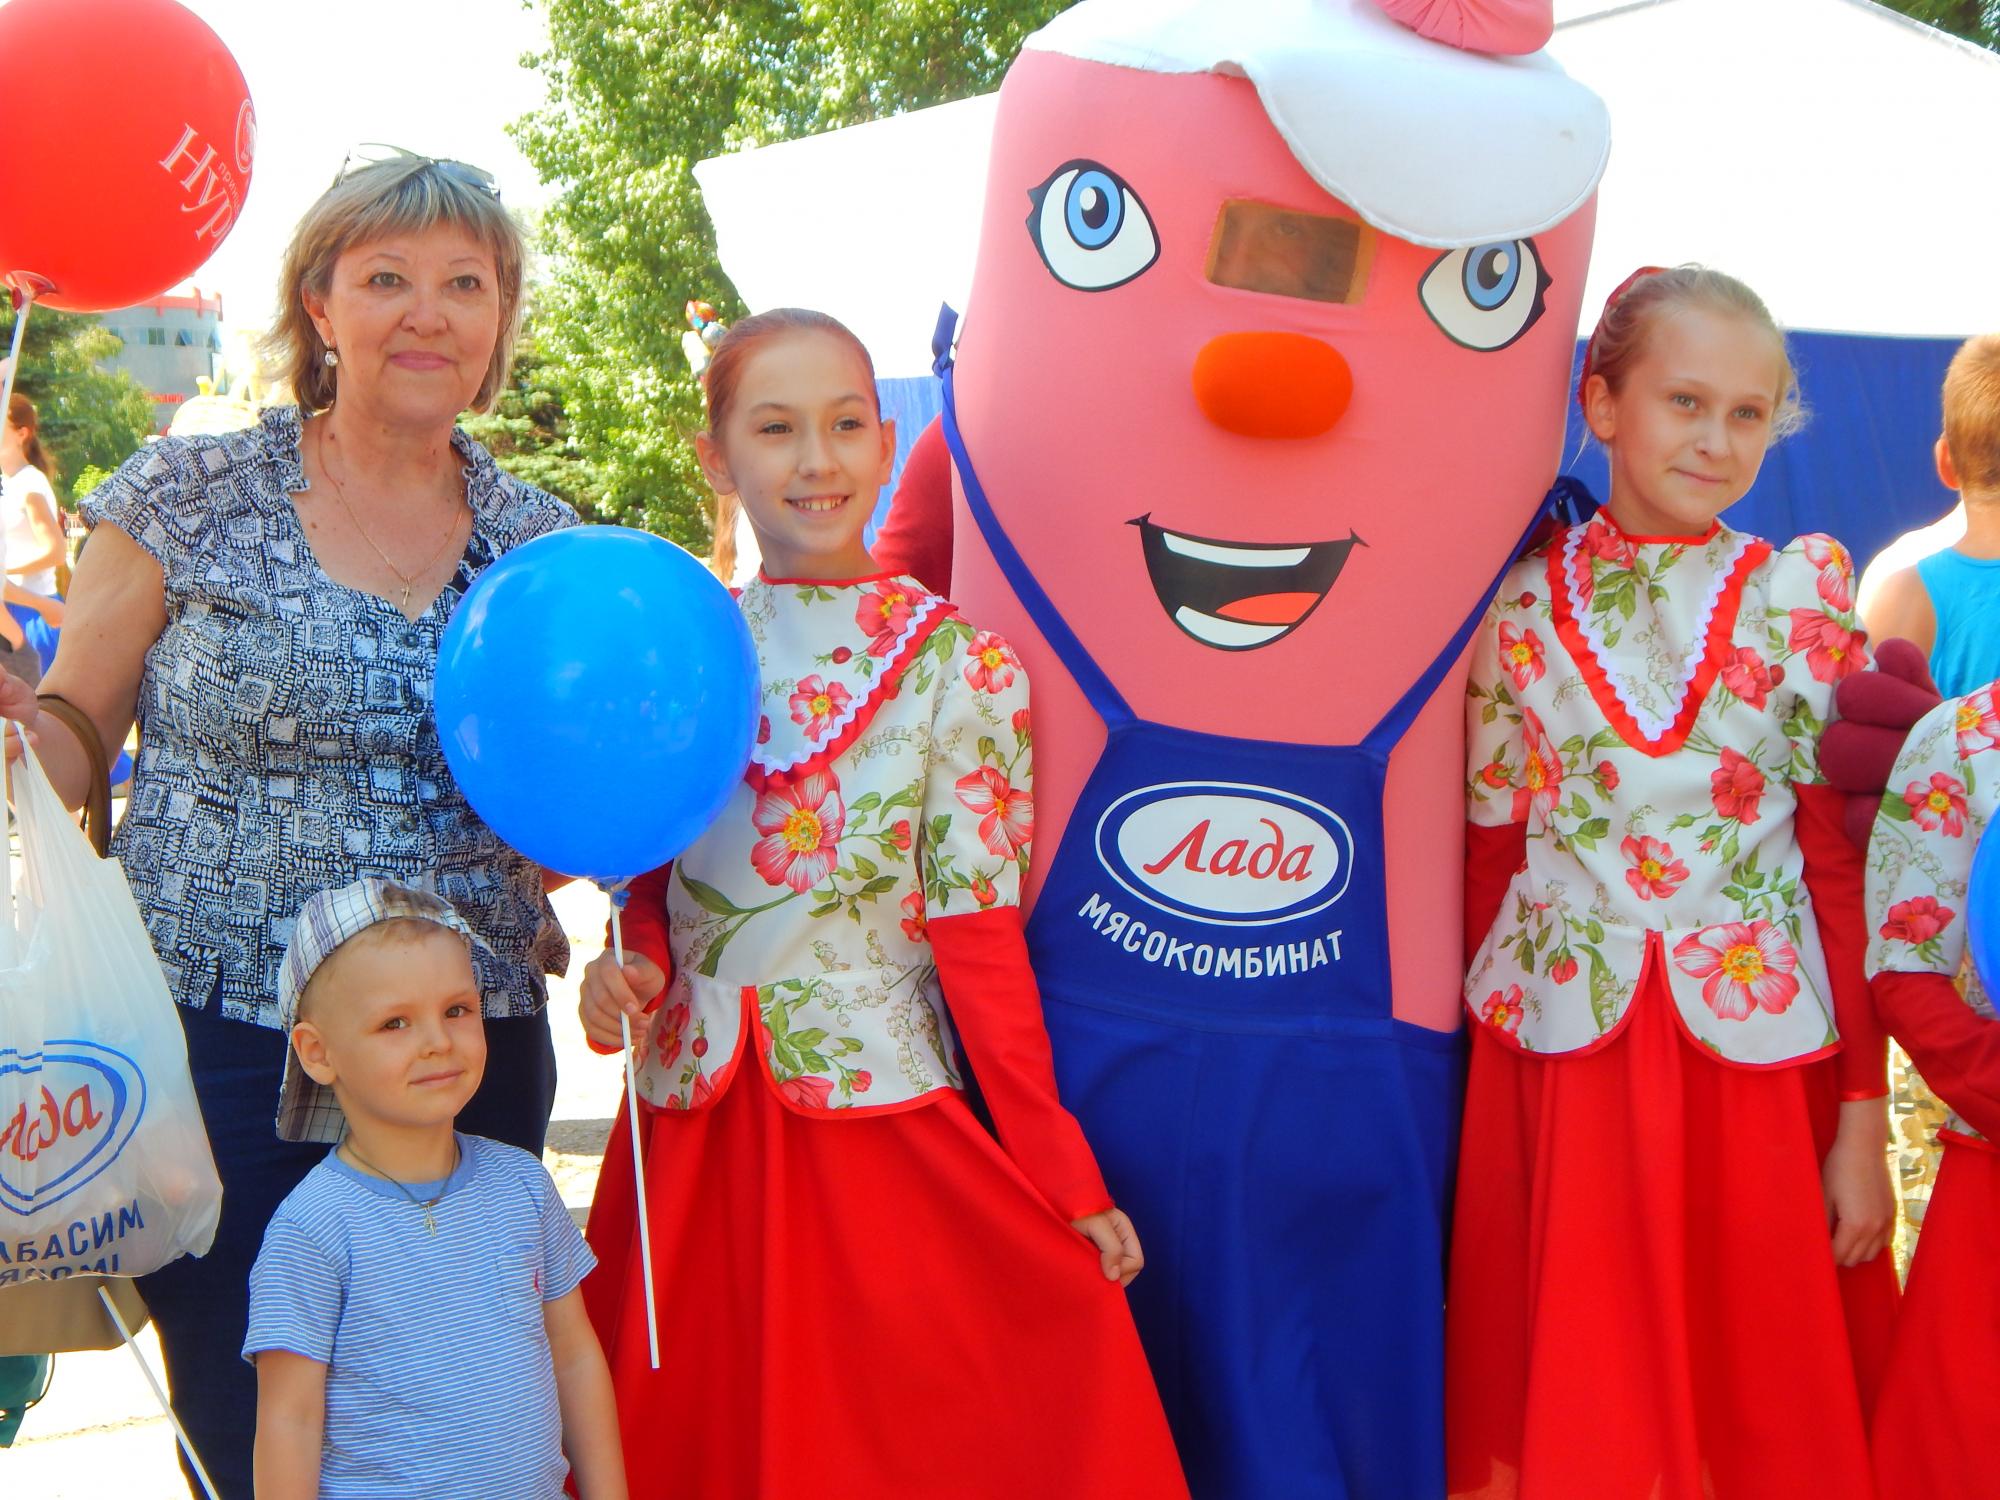 Мясокомбинат "Лада" принял участие в праздновании дня города Тольятти!